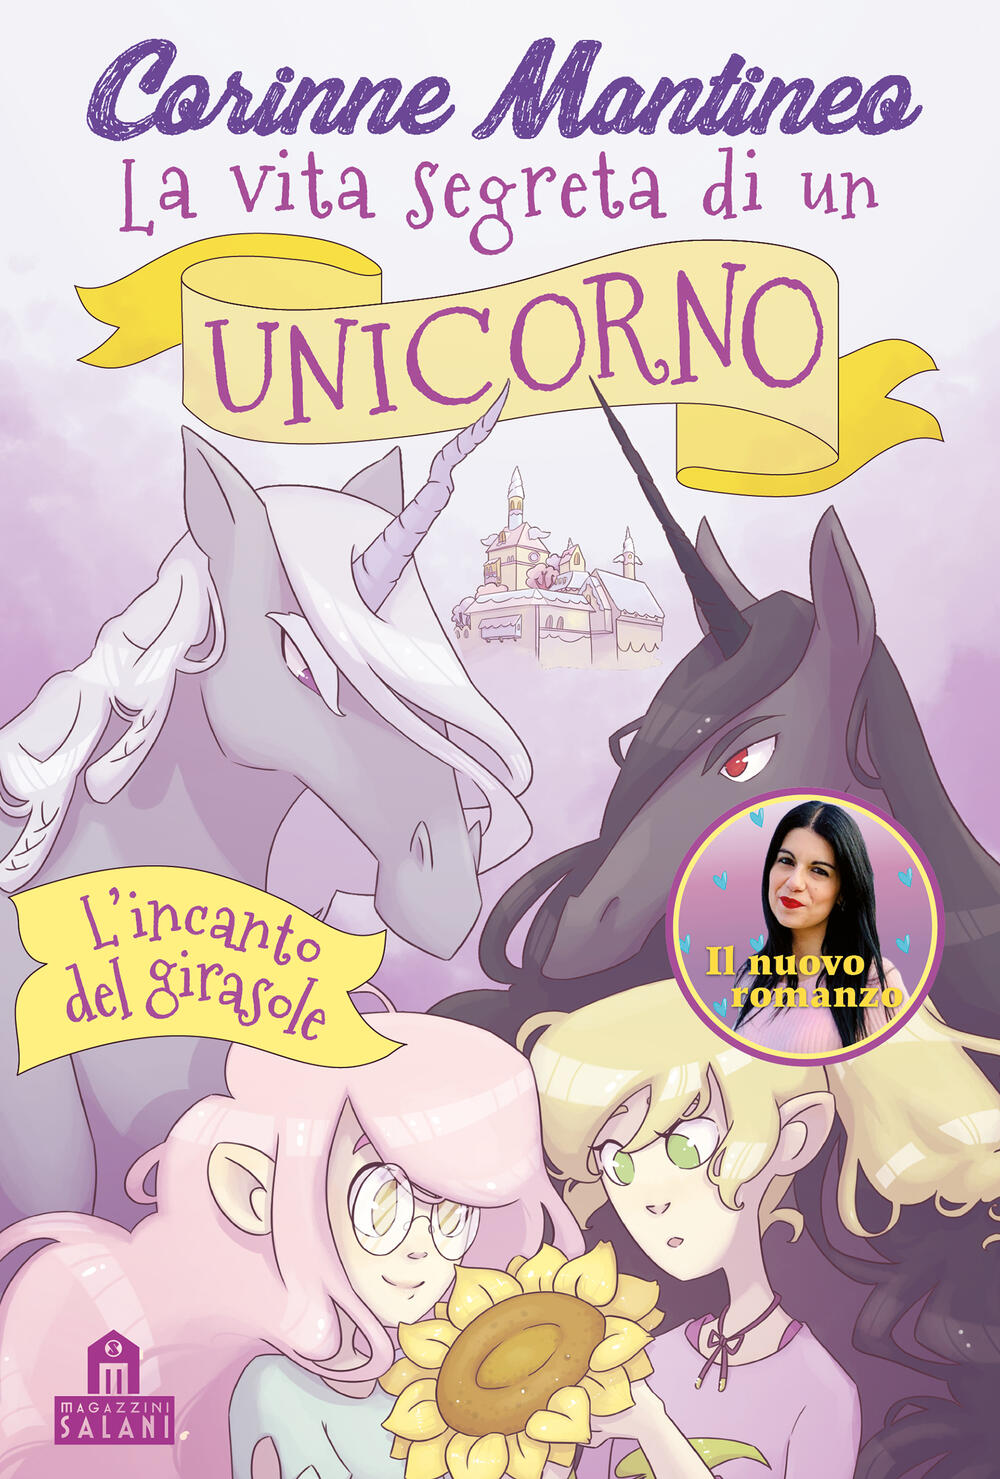 La vita segreta di un unicorno. L'incanto del girasole di Corinne Mantineo  - ebook - Magazzini Salani Romanzi - Il Libraio